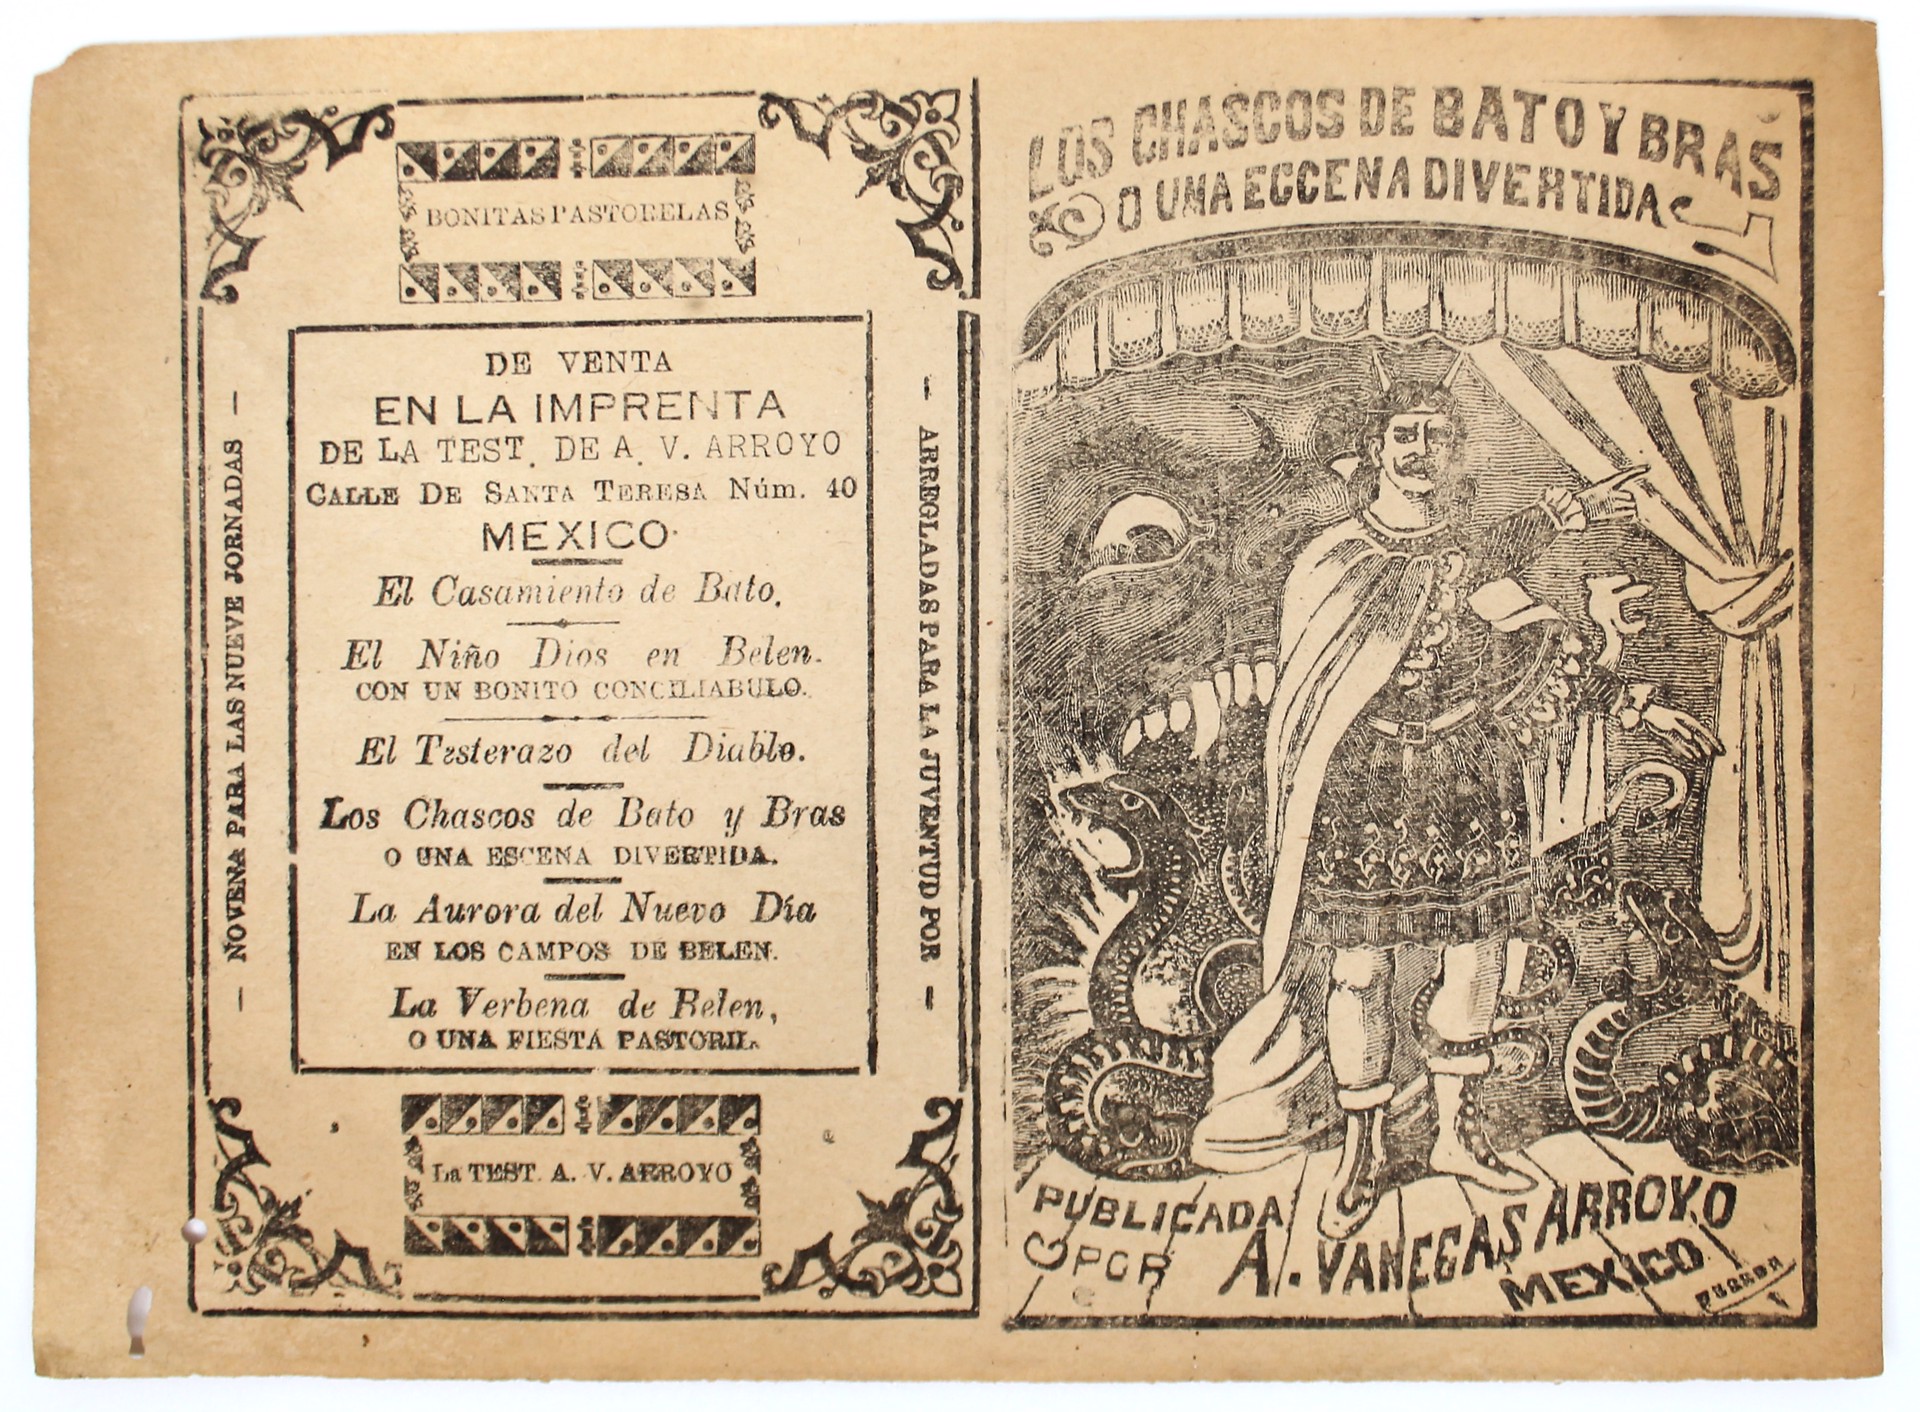 Los Chascos de Bato y Bras, o una escena divertida by José Guadalupe Posada